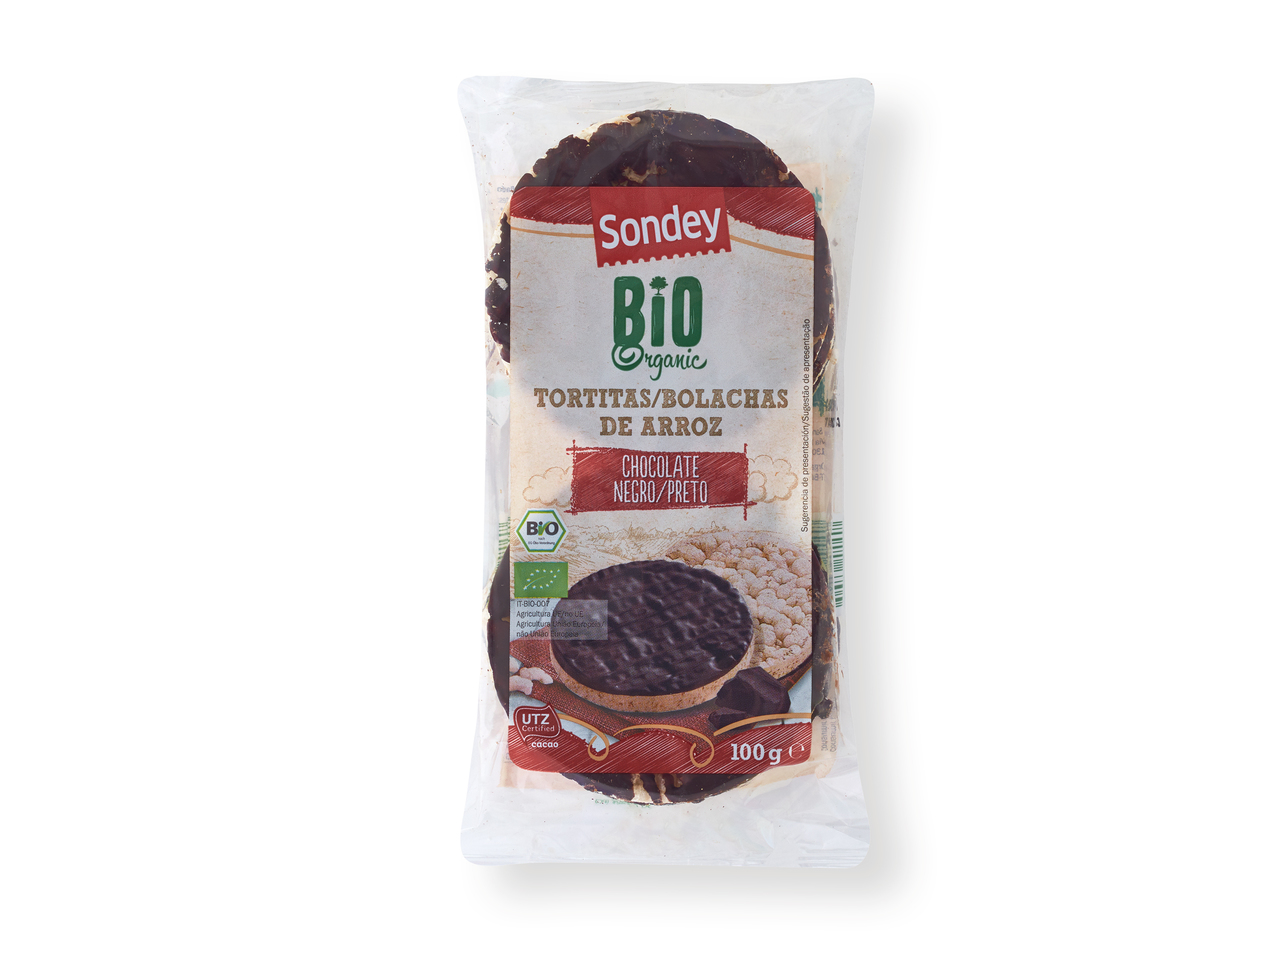 'Sondey(R)' Tortitas de arroz con chocolate ecológicas